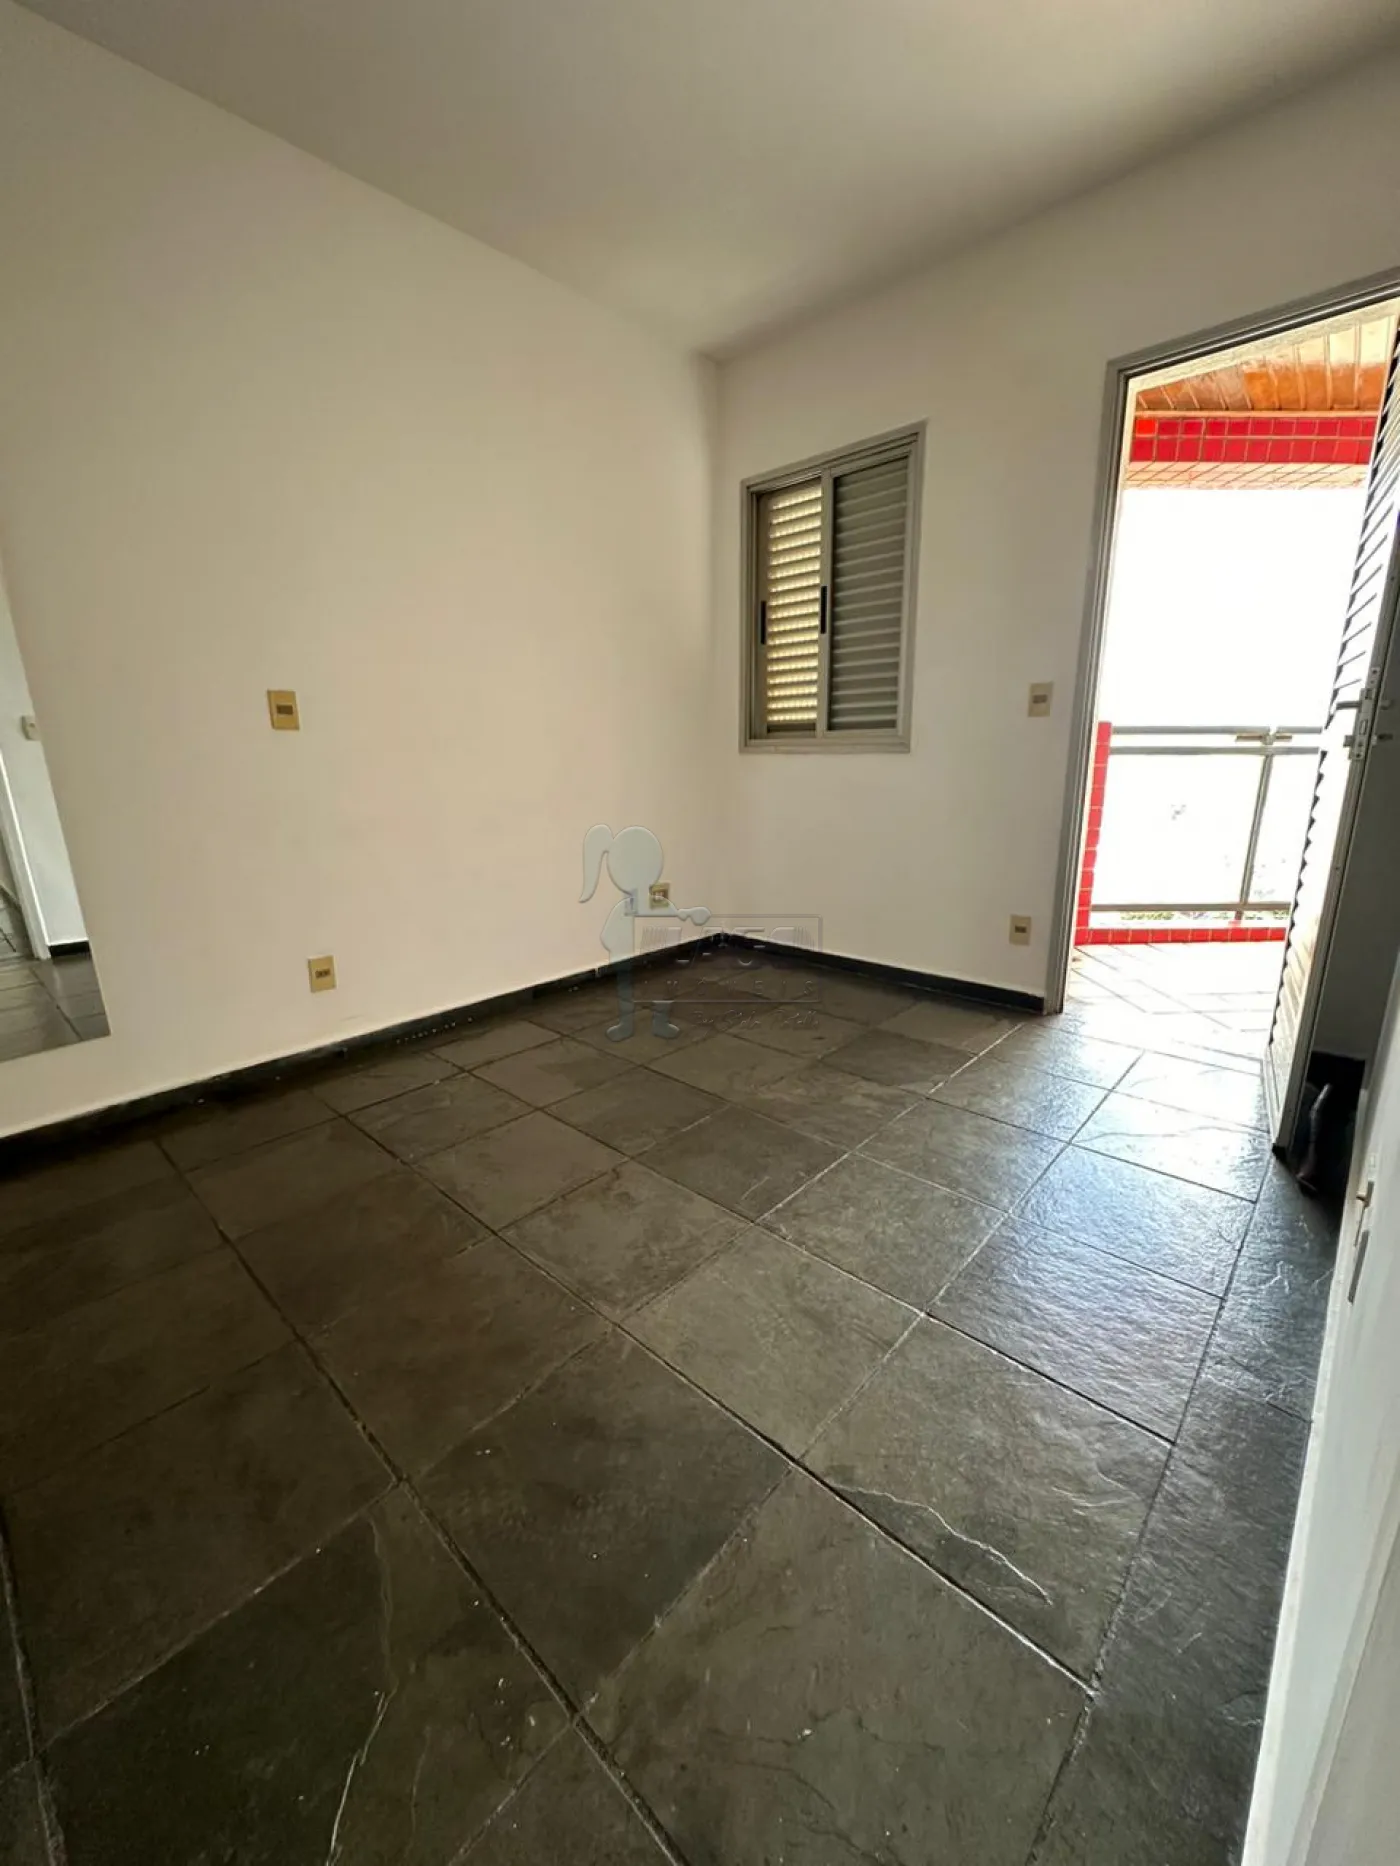 Comprar Apartamentos / Padrão em Ribeirão Preto R$ 320.000,00 - Foto 18